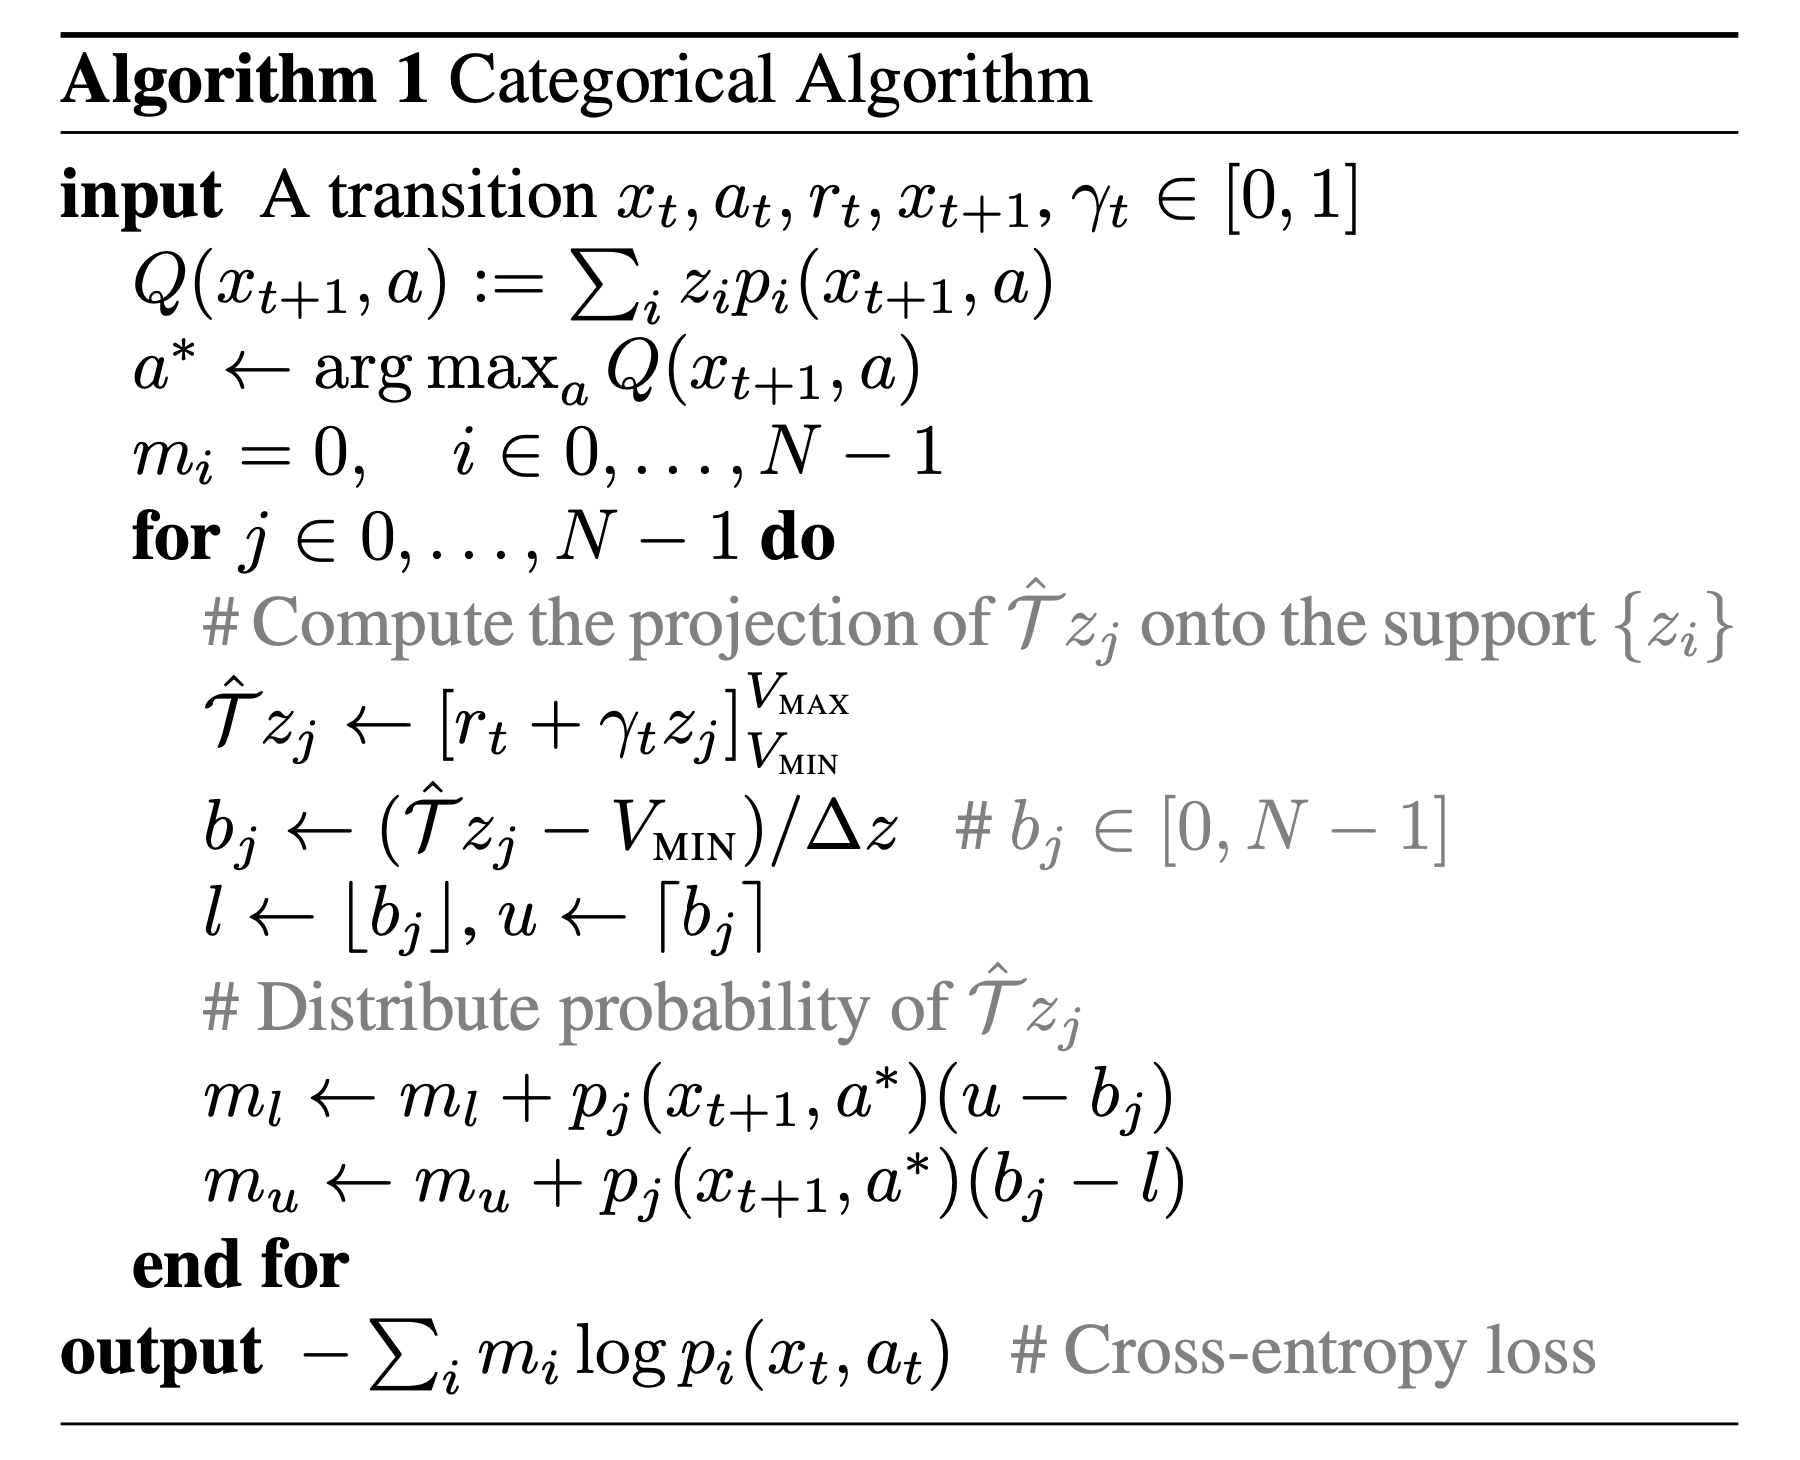 c51_paper_algorithm_fig1